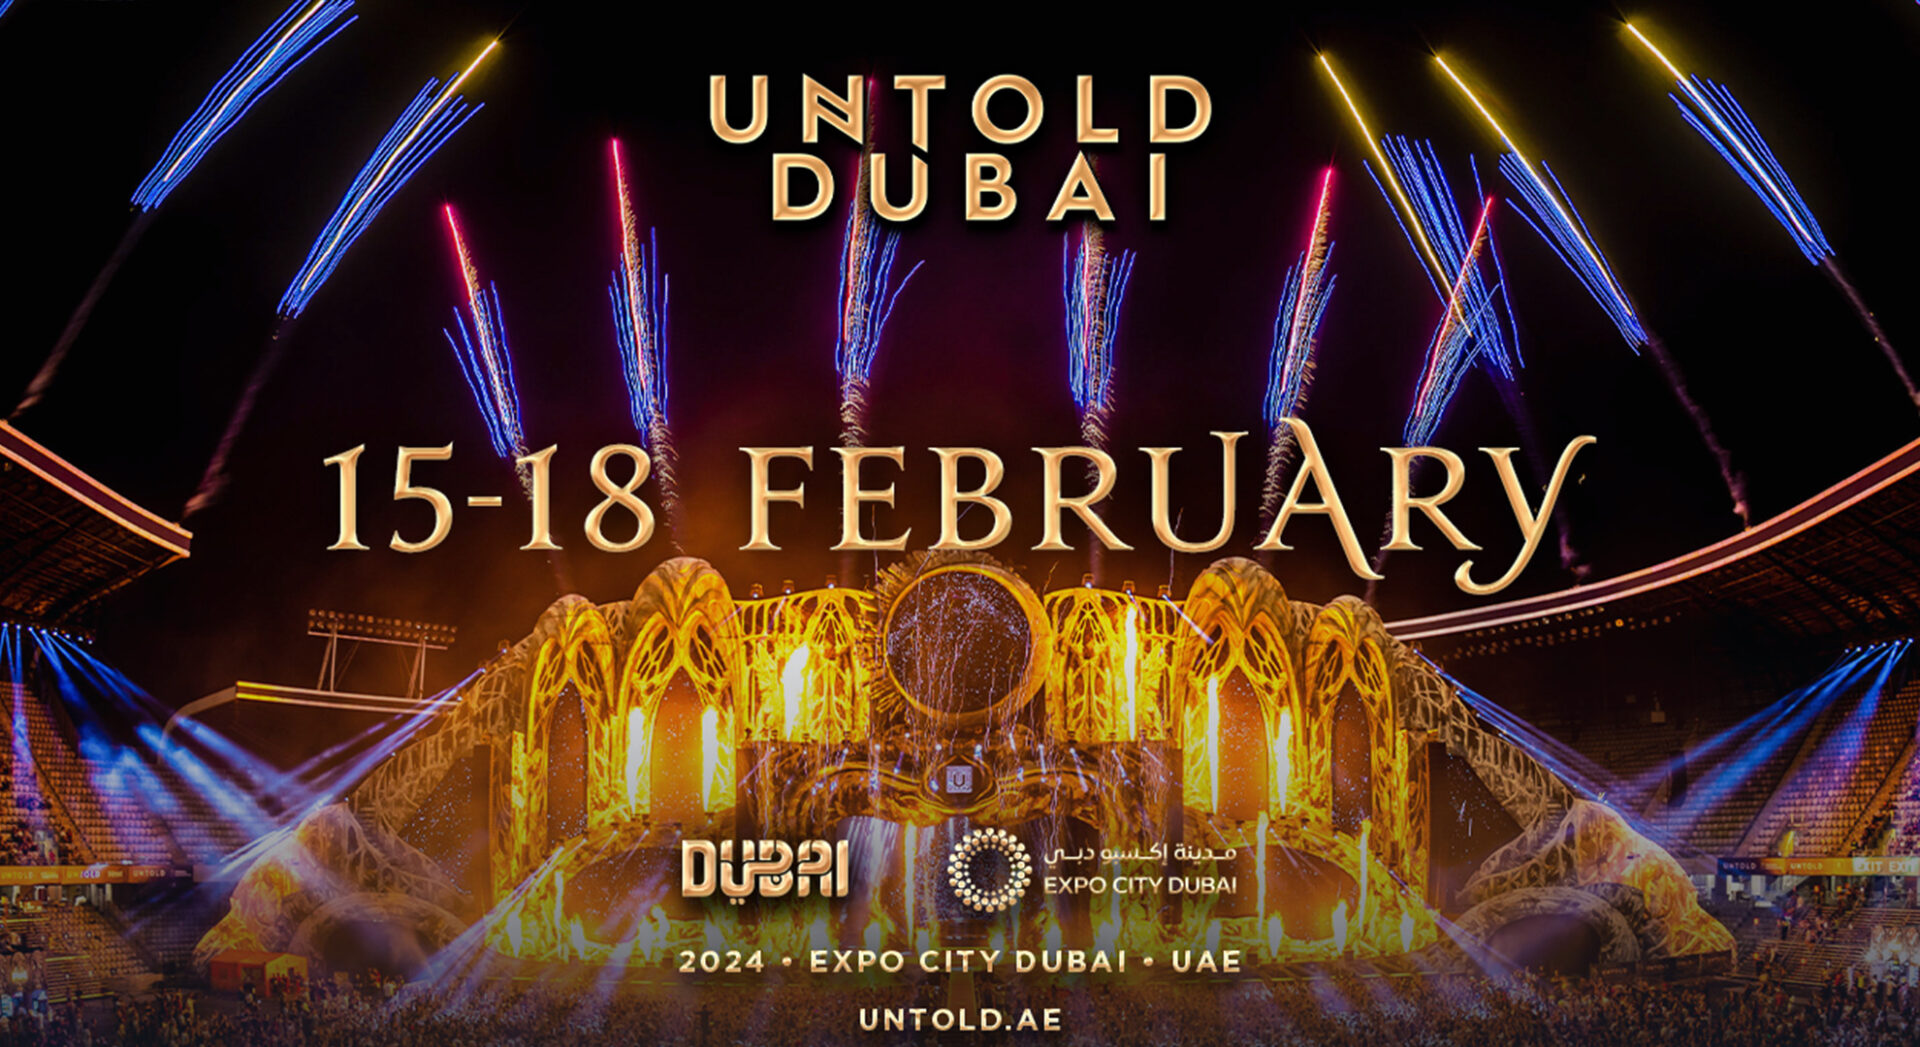 UNTOLD Dubai Festival – February 15-18th 2024